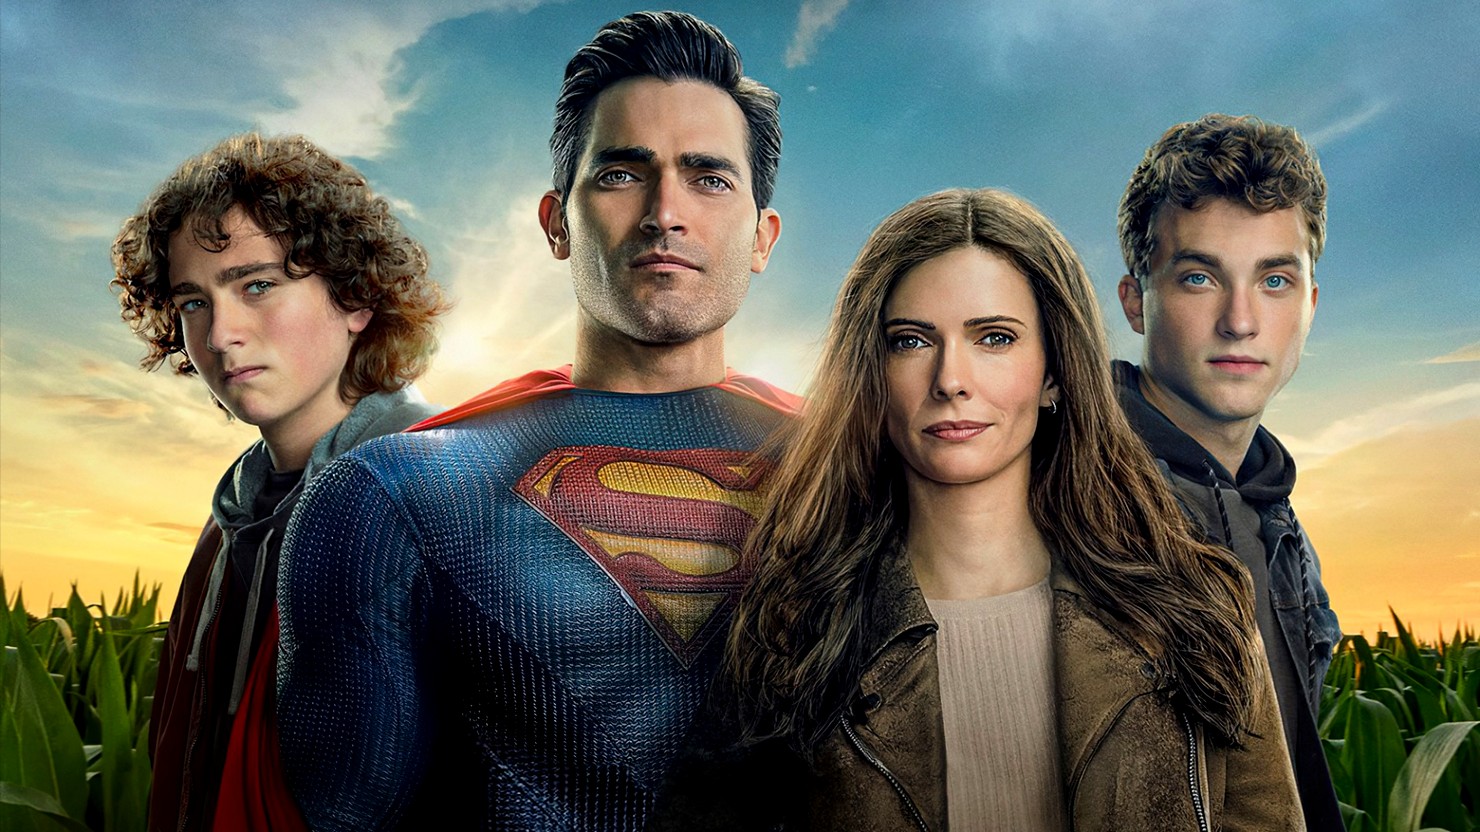 Премьера сериала "Супермен и Лоис" продемонстрировала рекордный прирост просмотров